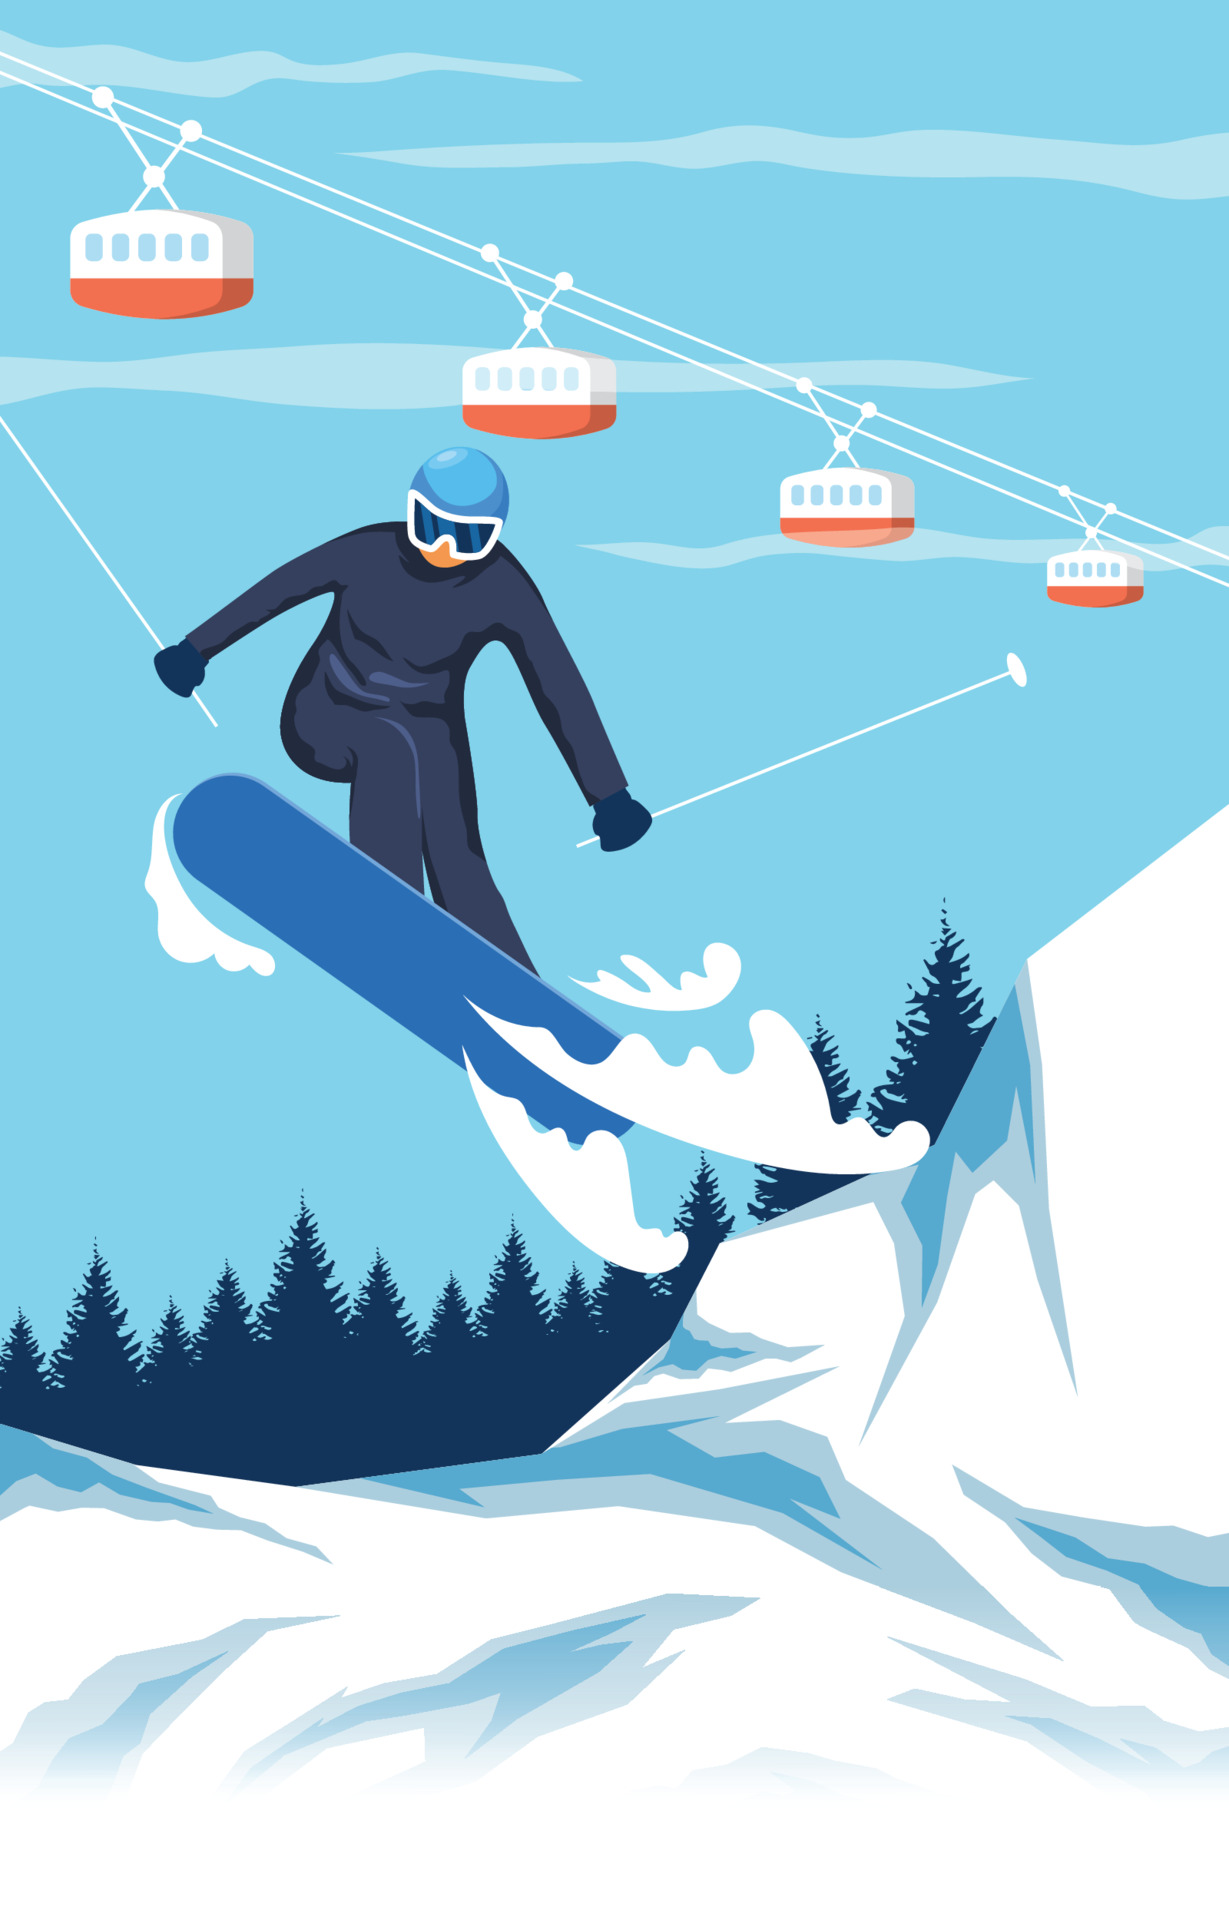 冬季极限滑雪运动插图0